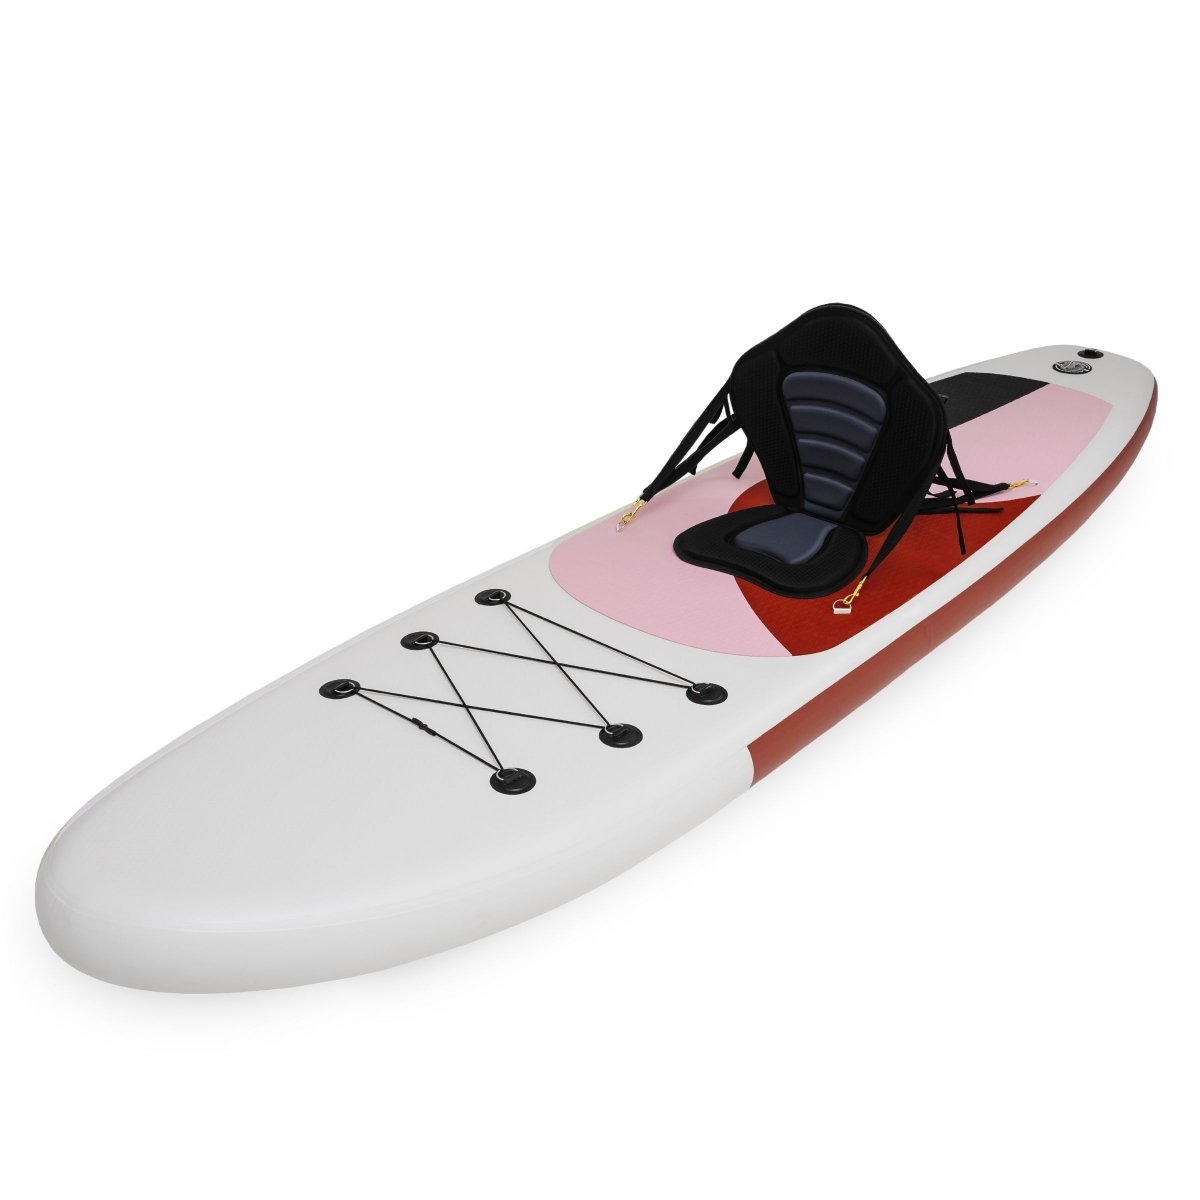 Pompowana deska SUP Stand Up Paddle 320cm z wiosłem i siedziskiem - HyperMotion WAVE BOOST PINK 320